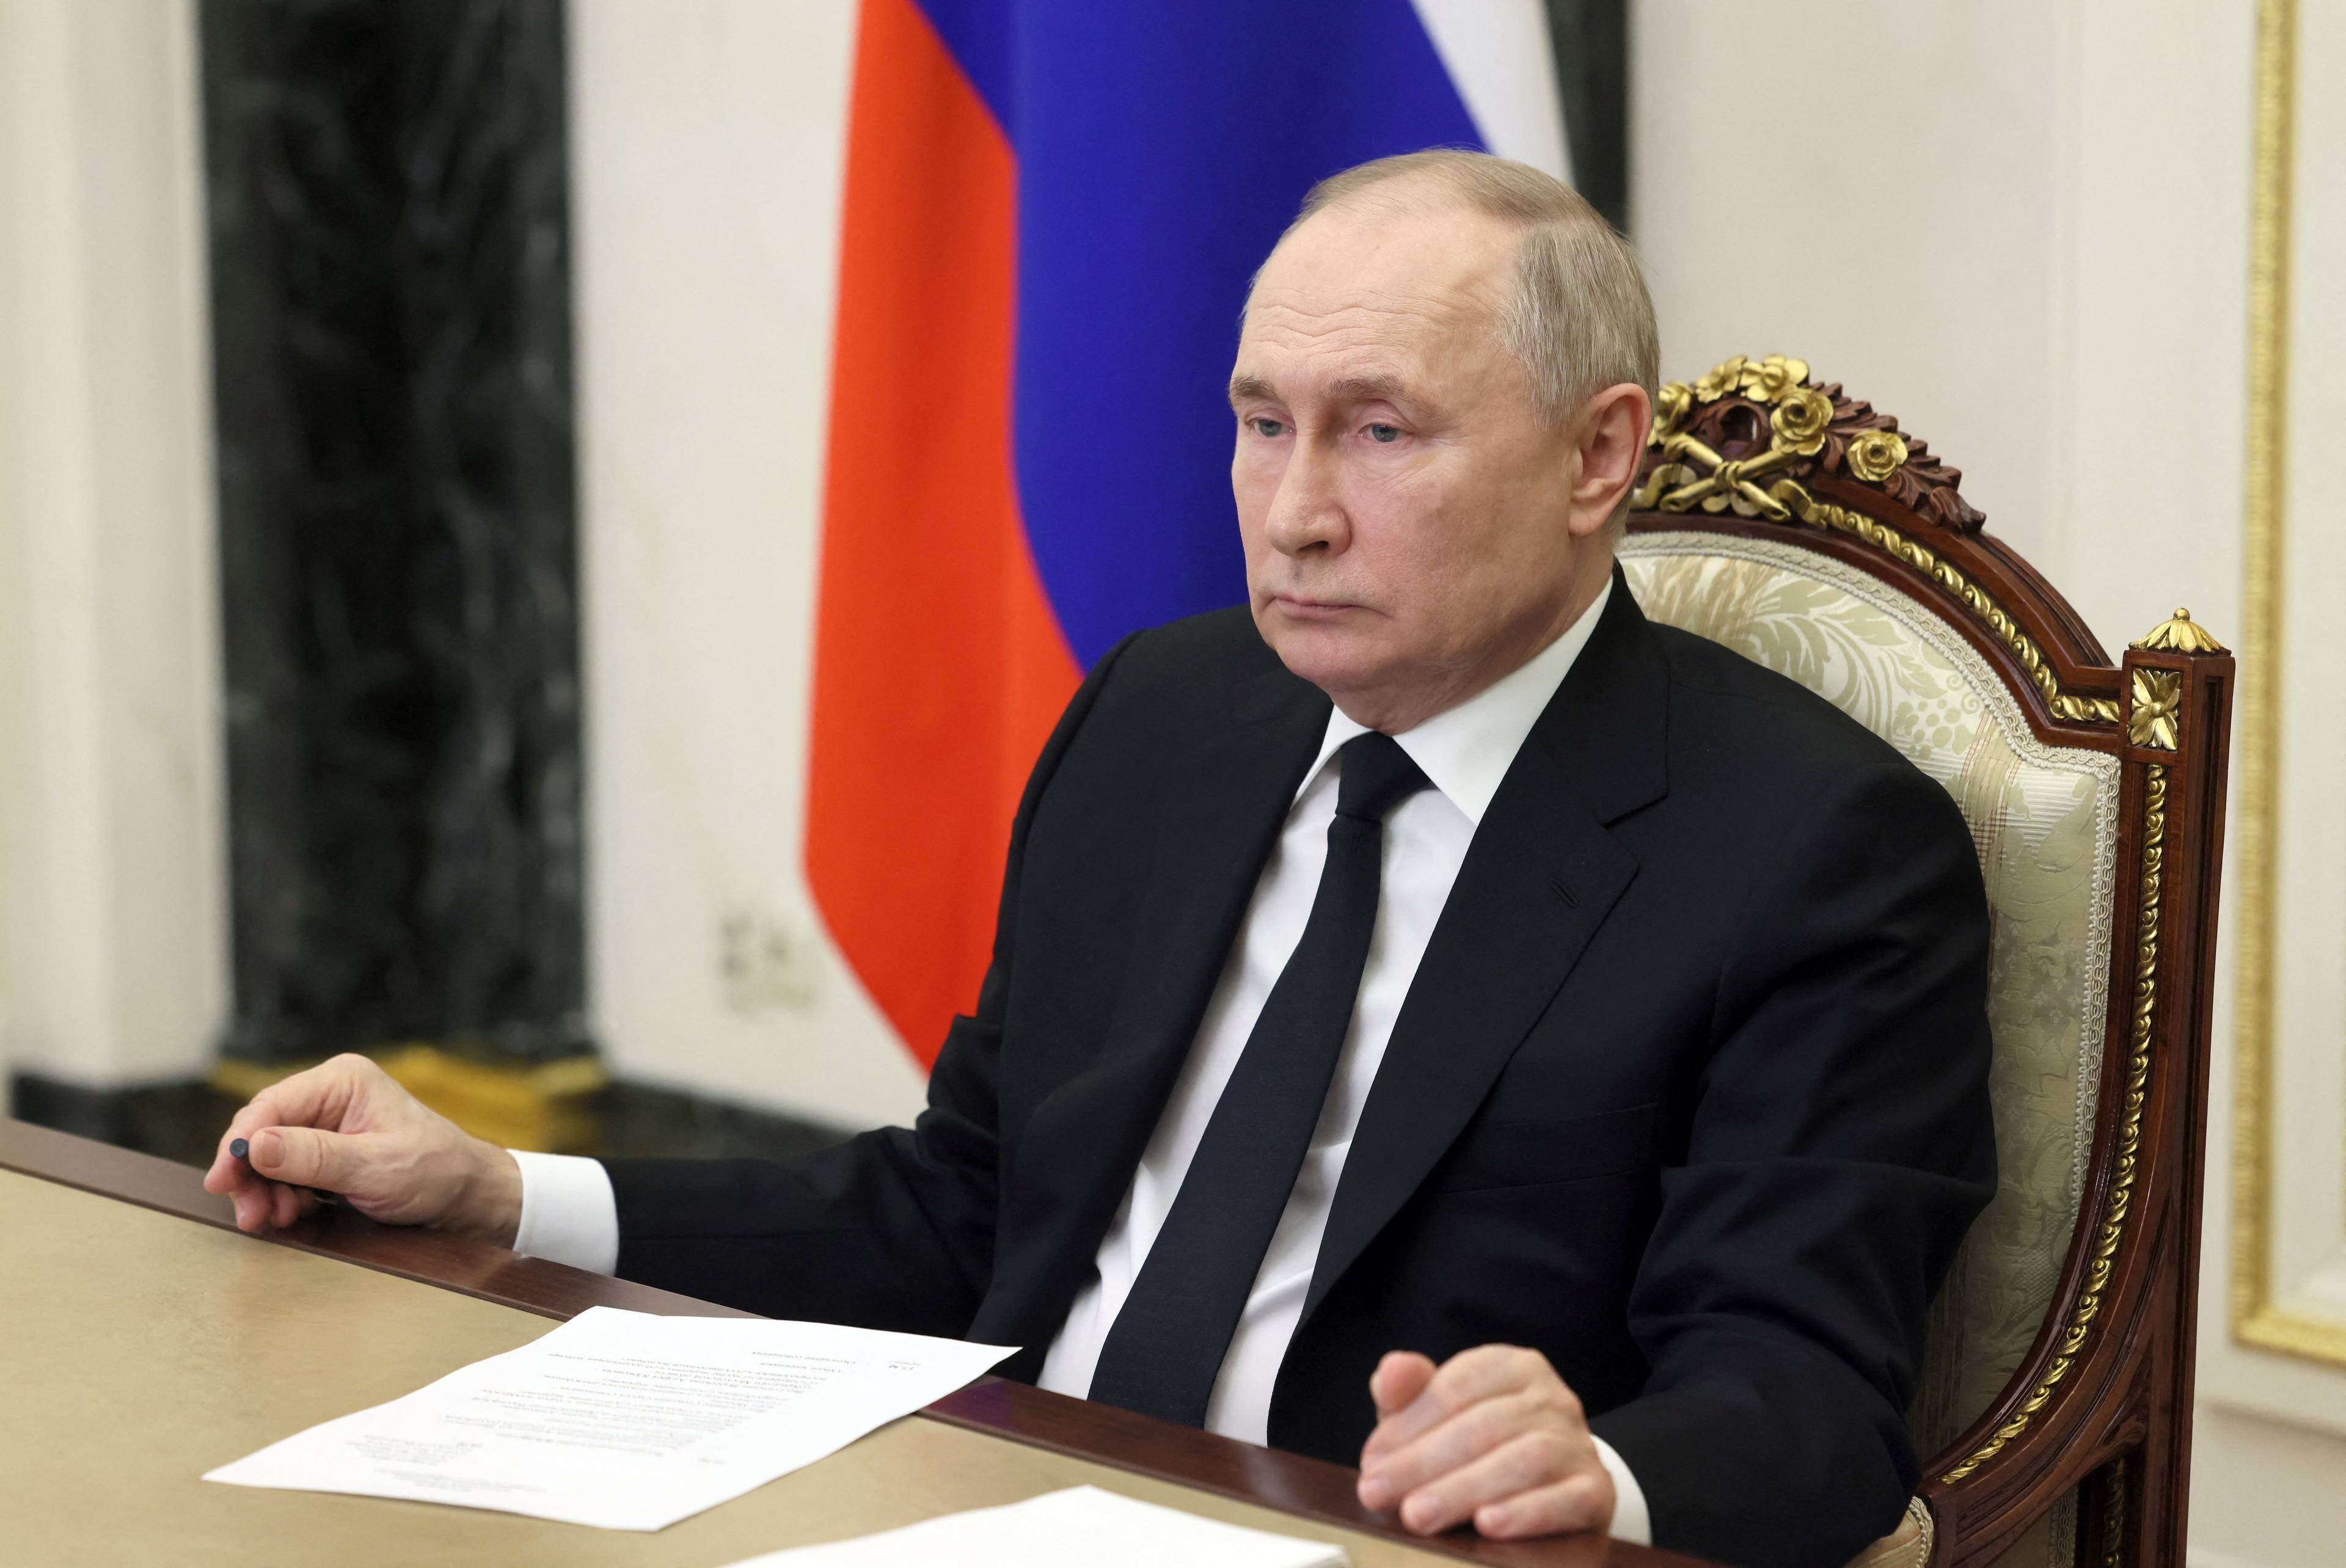 Władimir Putin siedzi za stołem